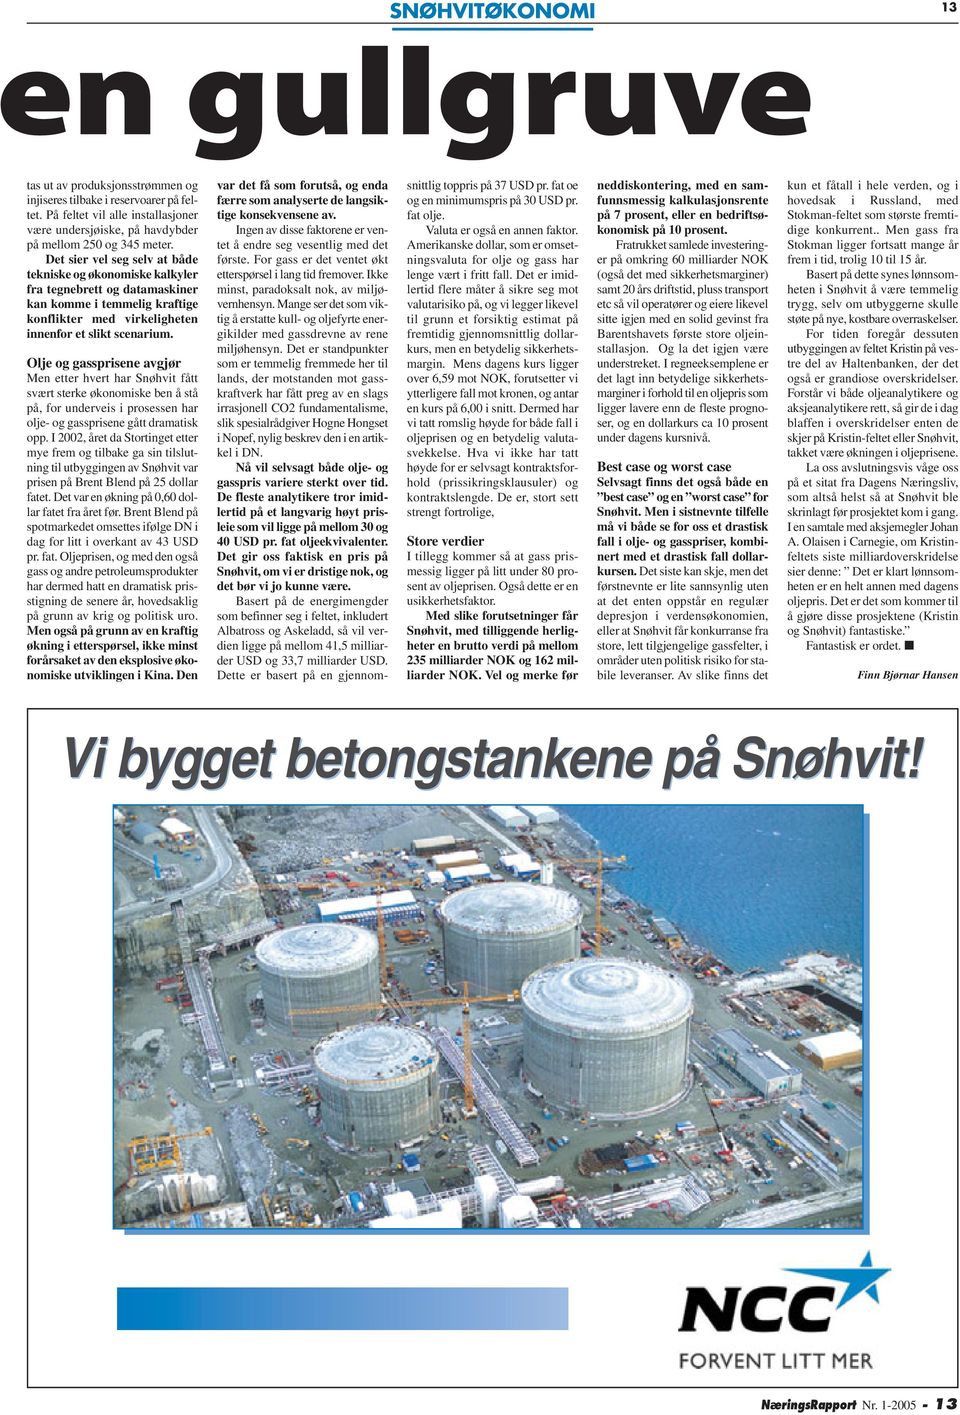 Olje og gassprisene avgjør Men etter hvert har Snøhvit fått svært sterke økonomiske ben å stå på, for underveis i prosessen har olje- og gassprisene gått dramatisk opp.